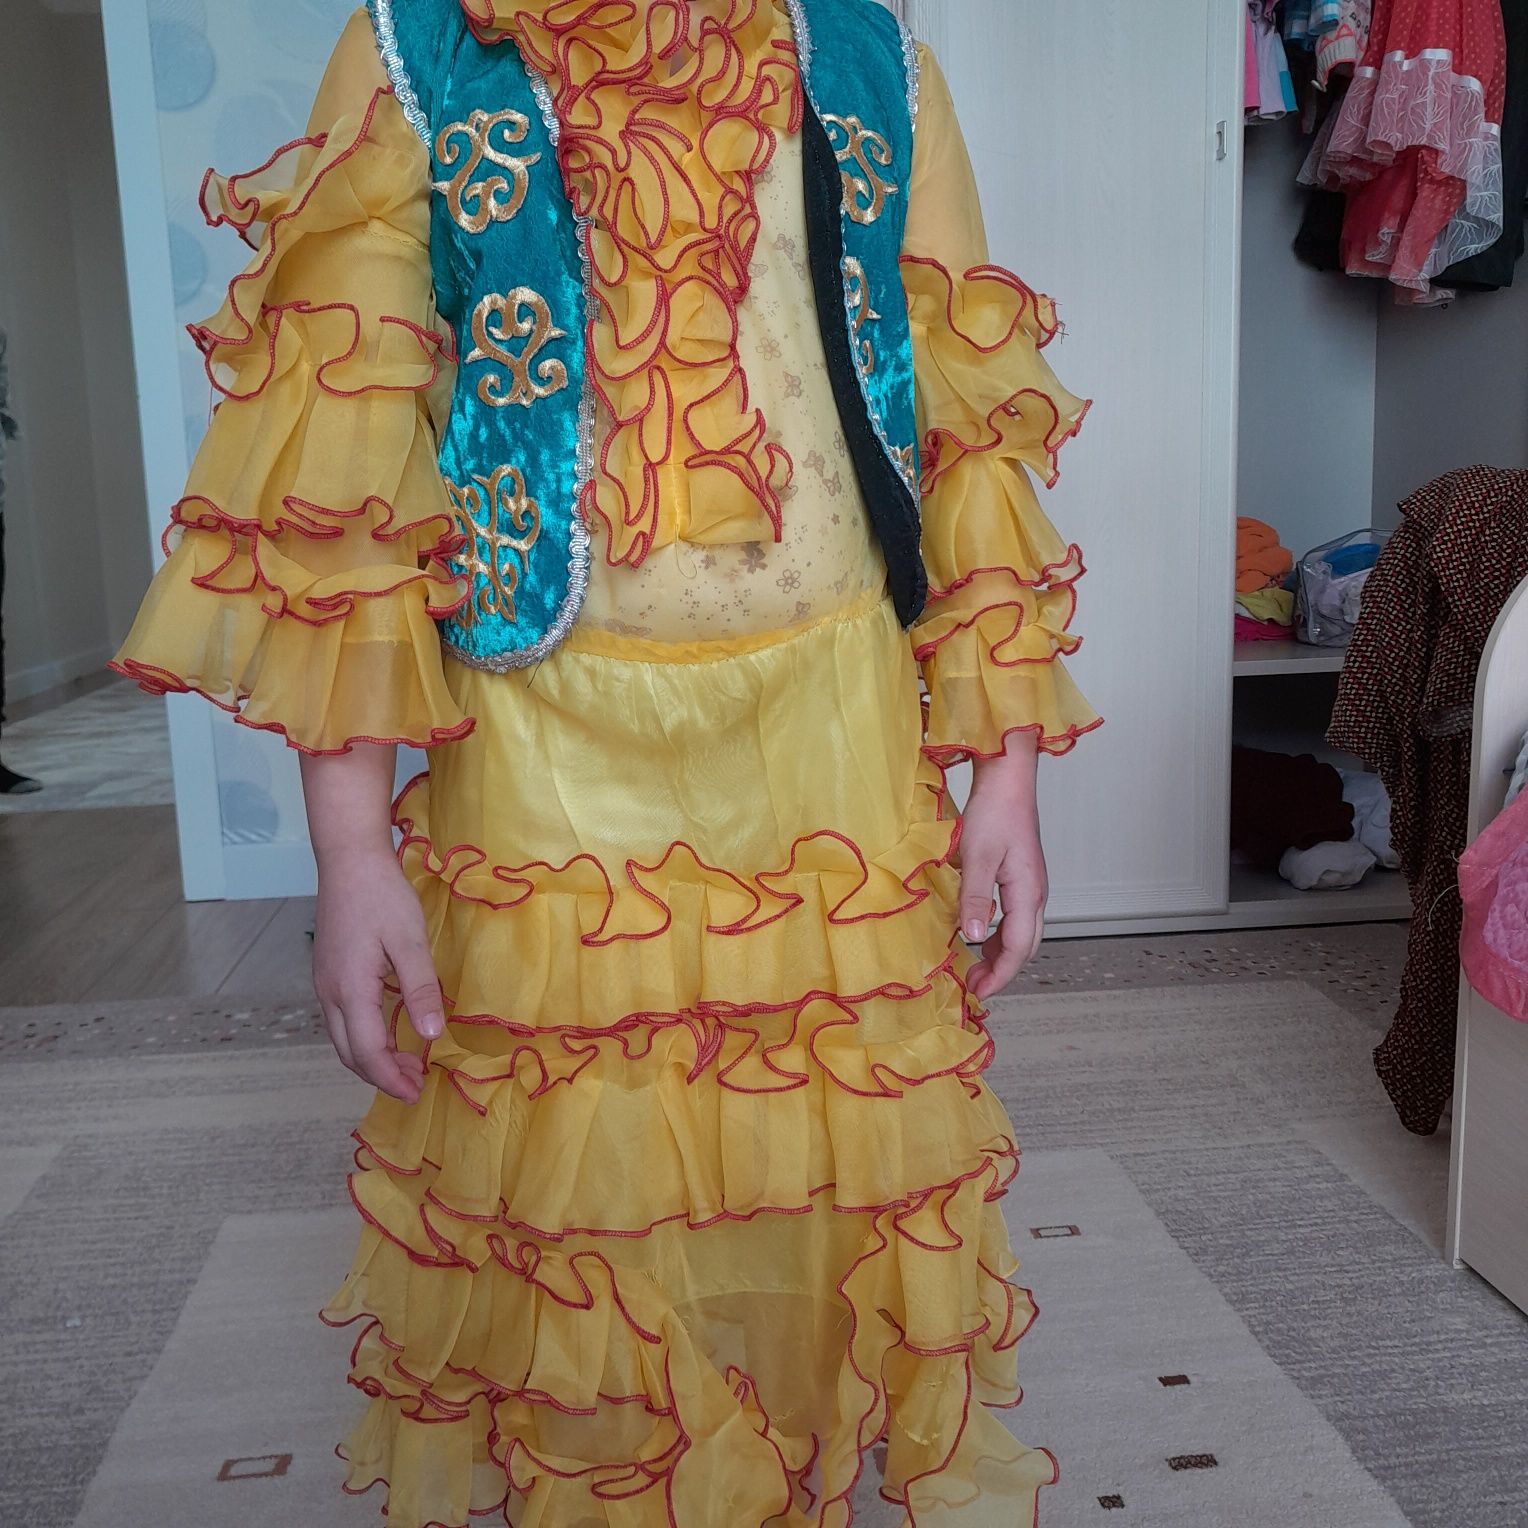 Продам казахском  национальное платье 3 в 1 . Кажекей и корона.